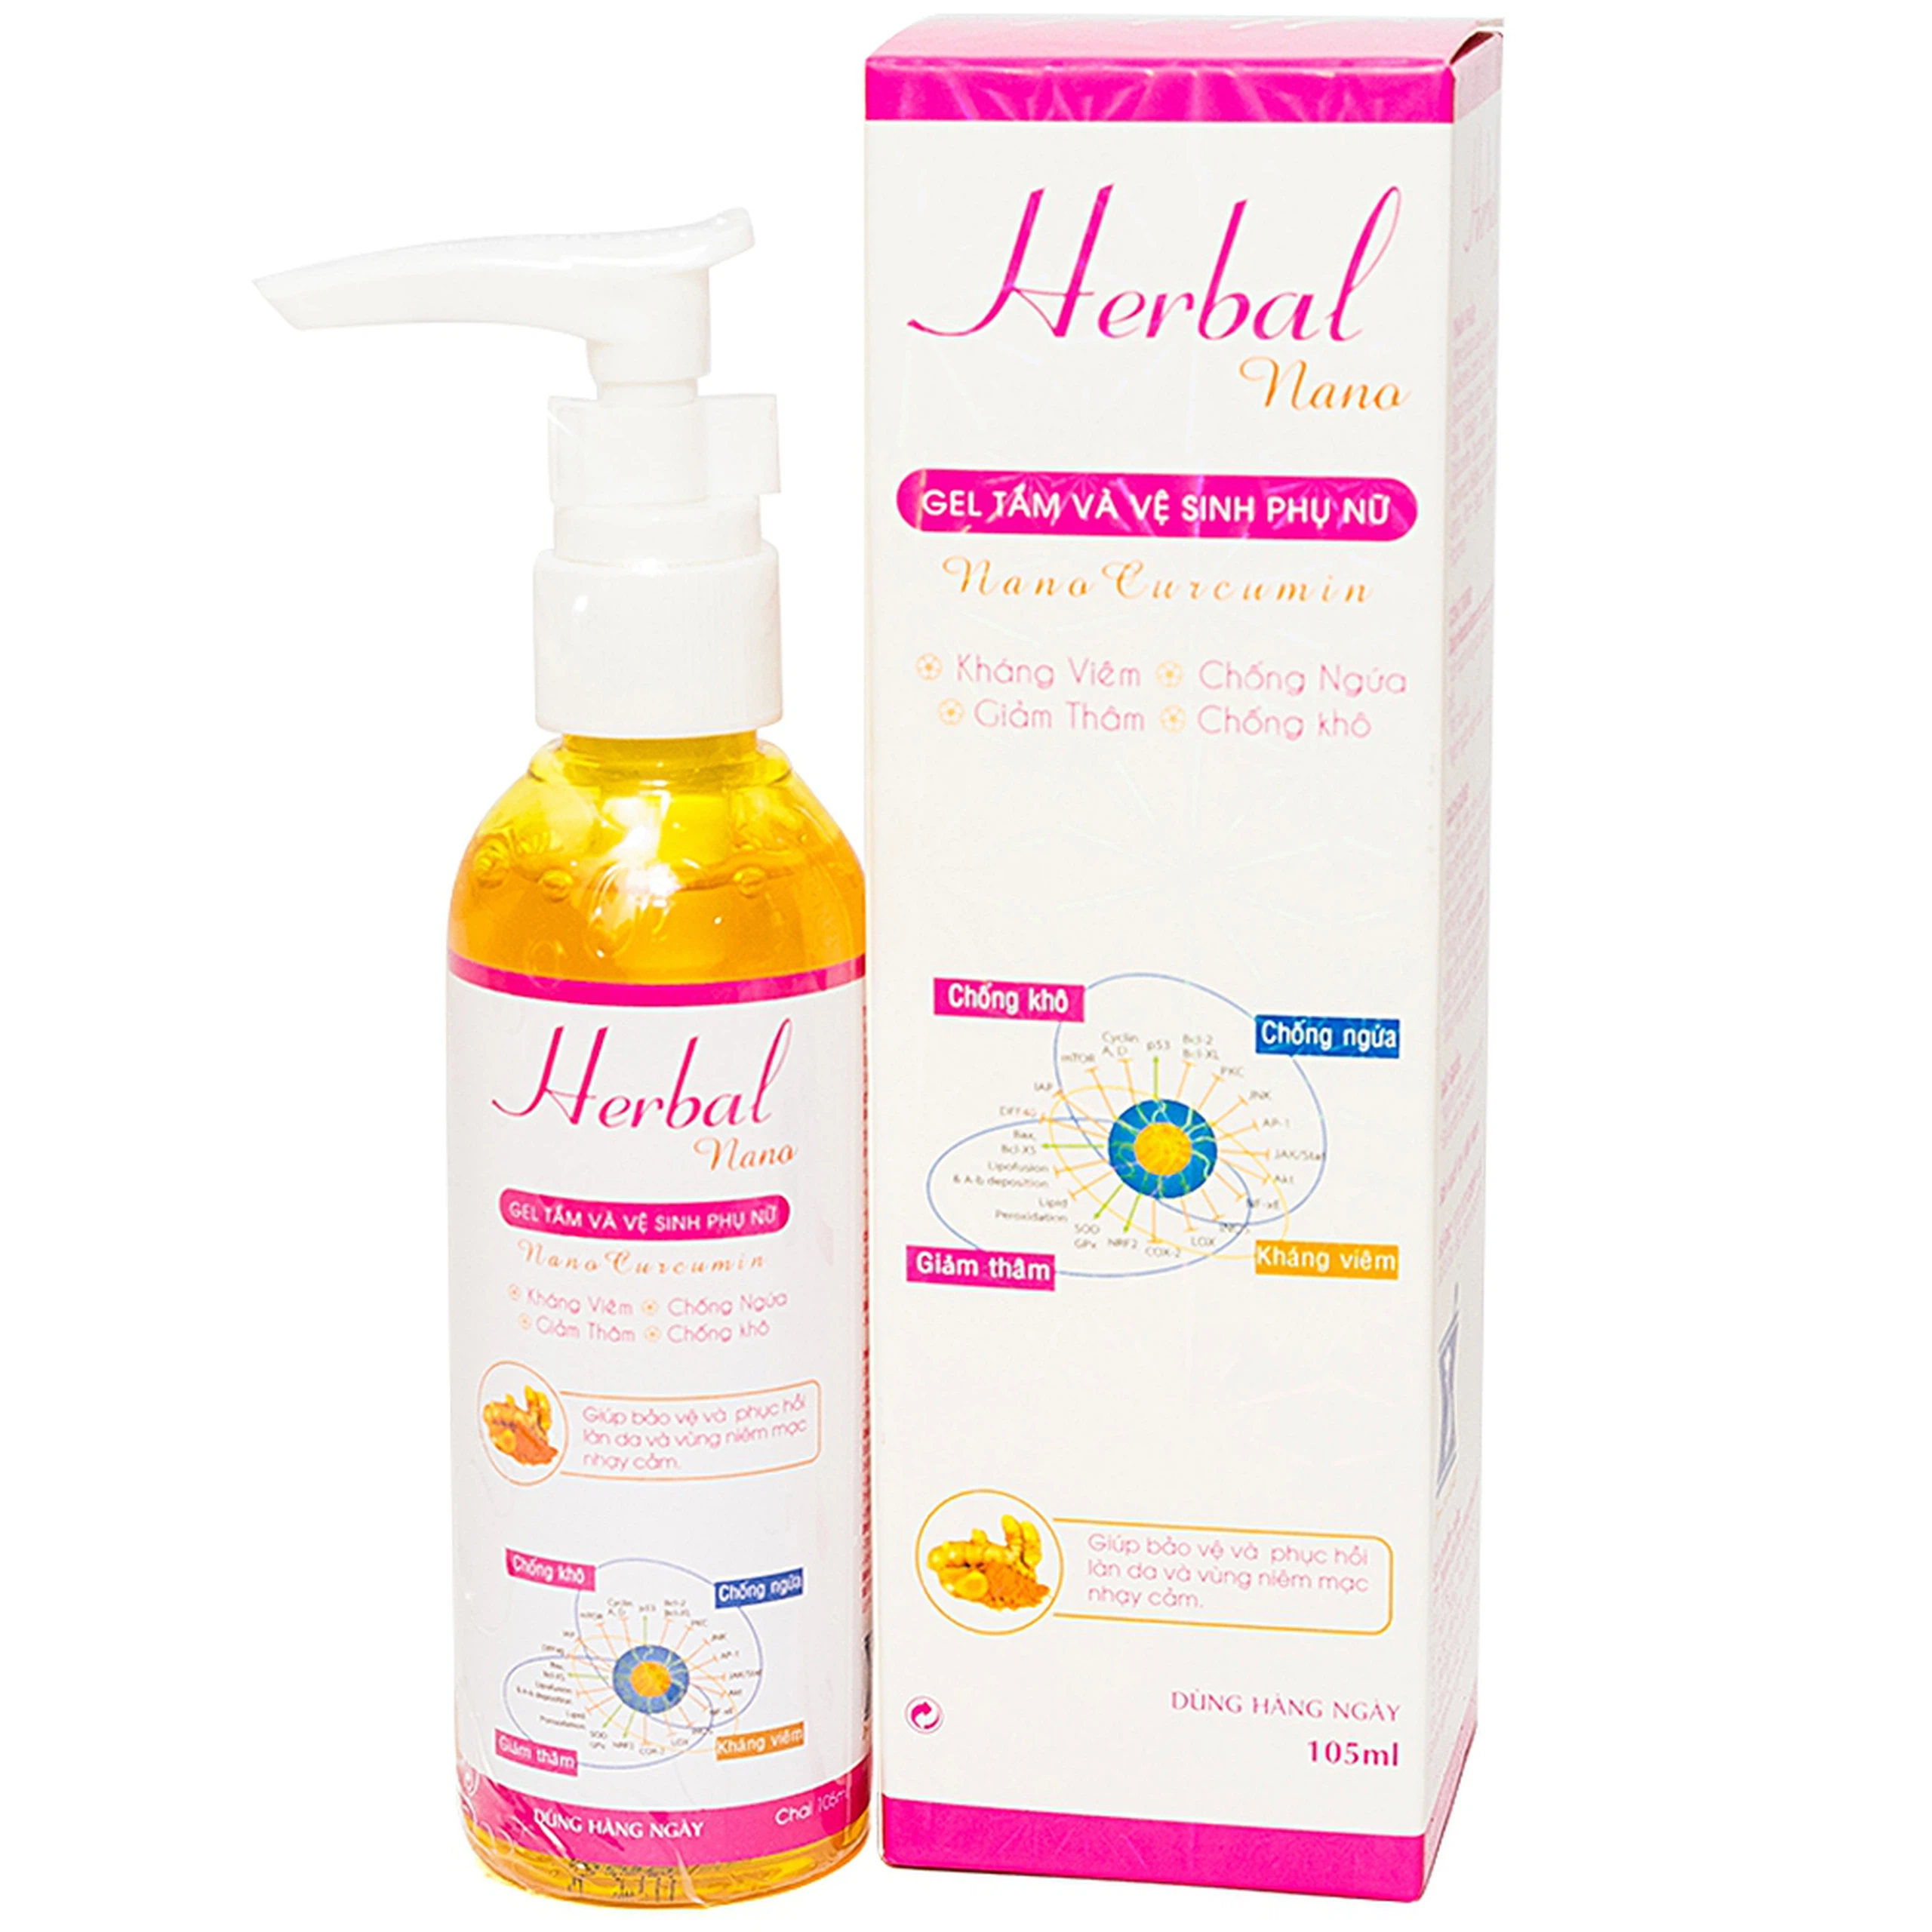 Gel tắm và vệ sinh phụ nữ Herbal Nano Vinapharma giúp làm sạch, kháng viêm (105ml)